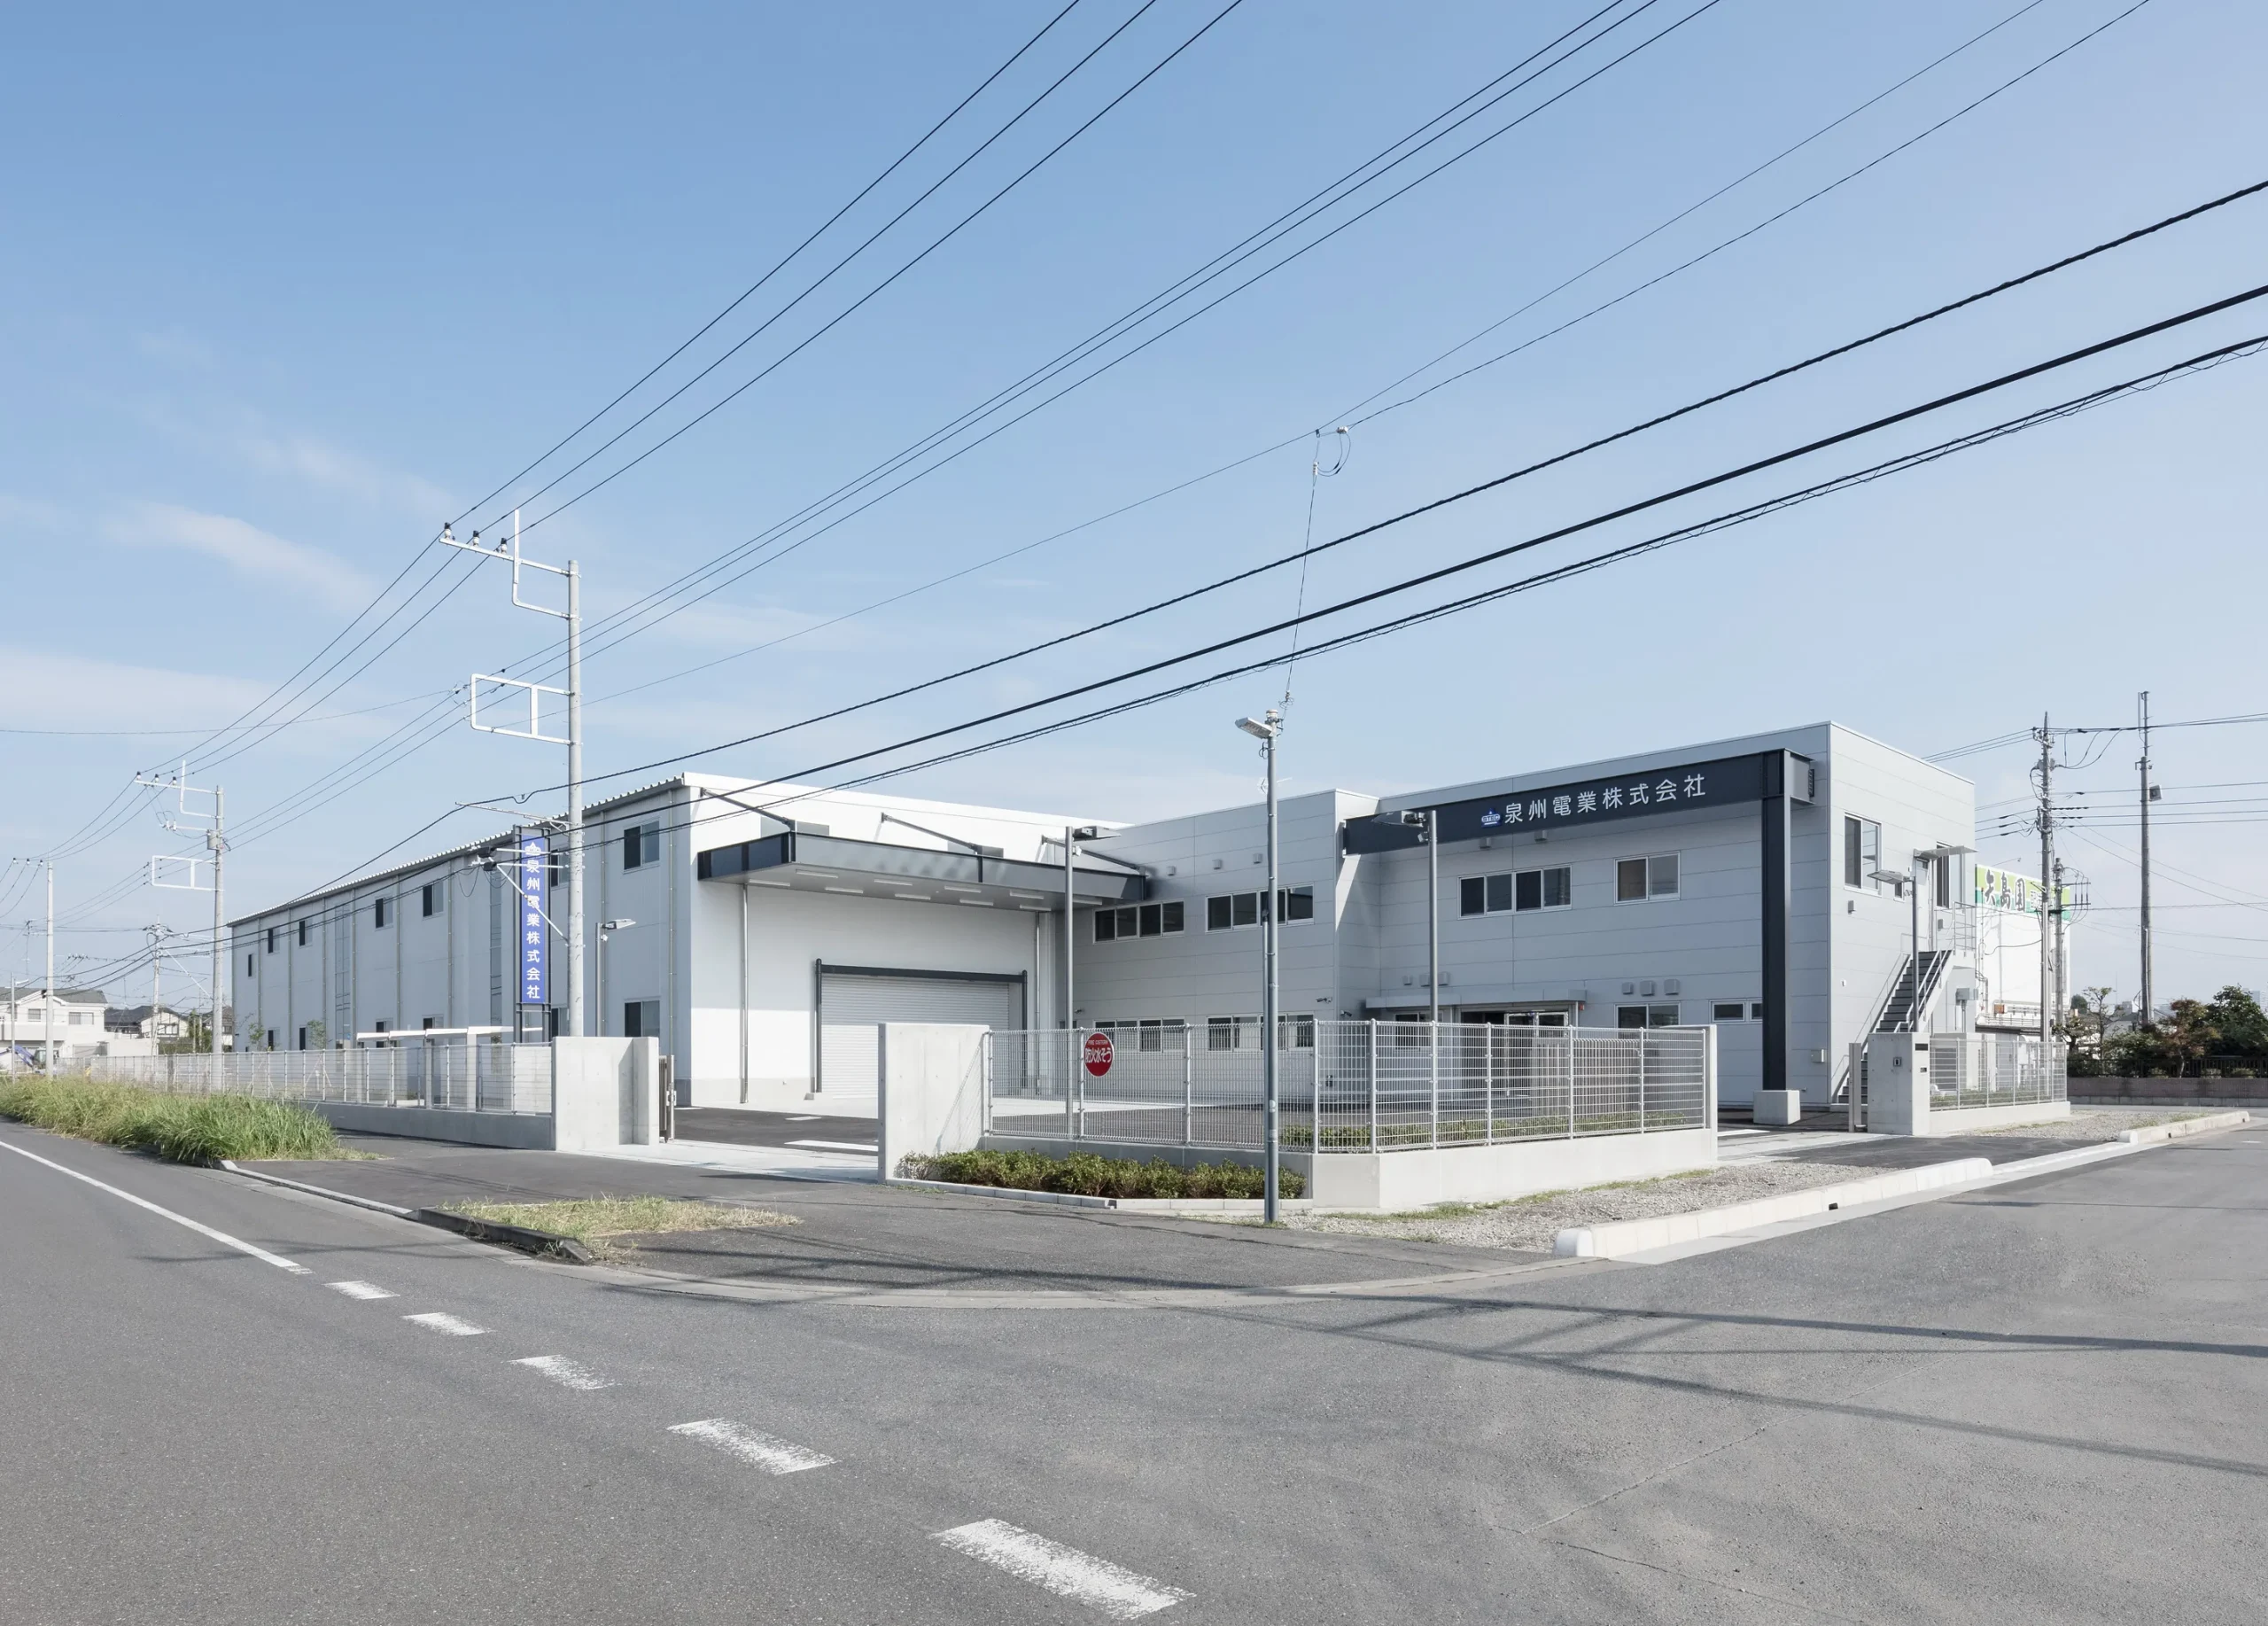 泉州電業埼玉営業所新社屋新築工事のサムネイル画像です